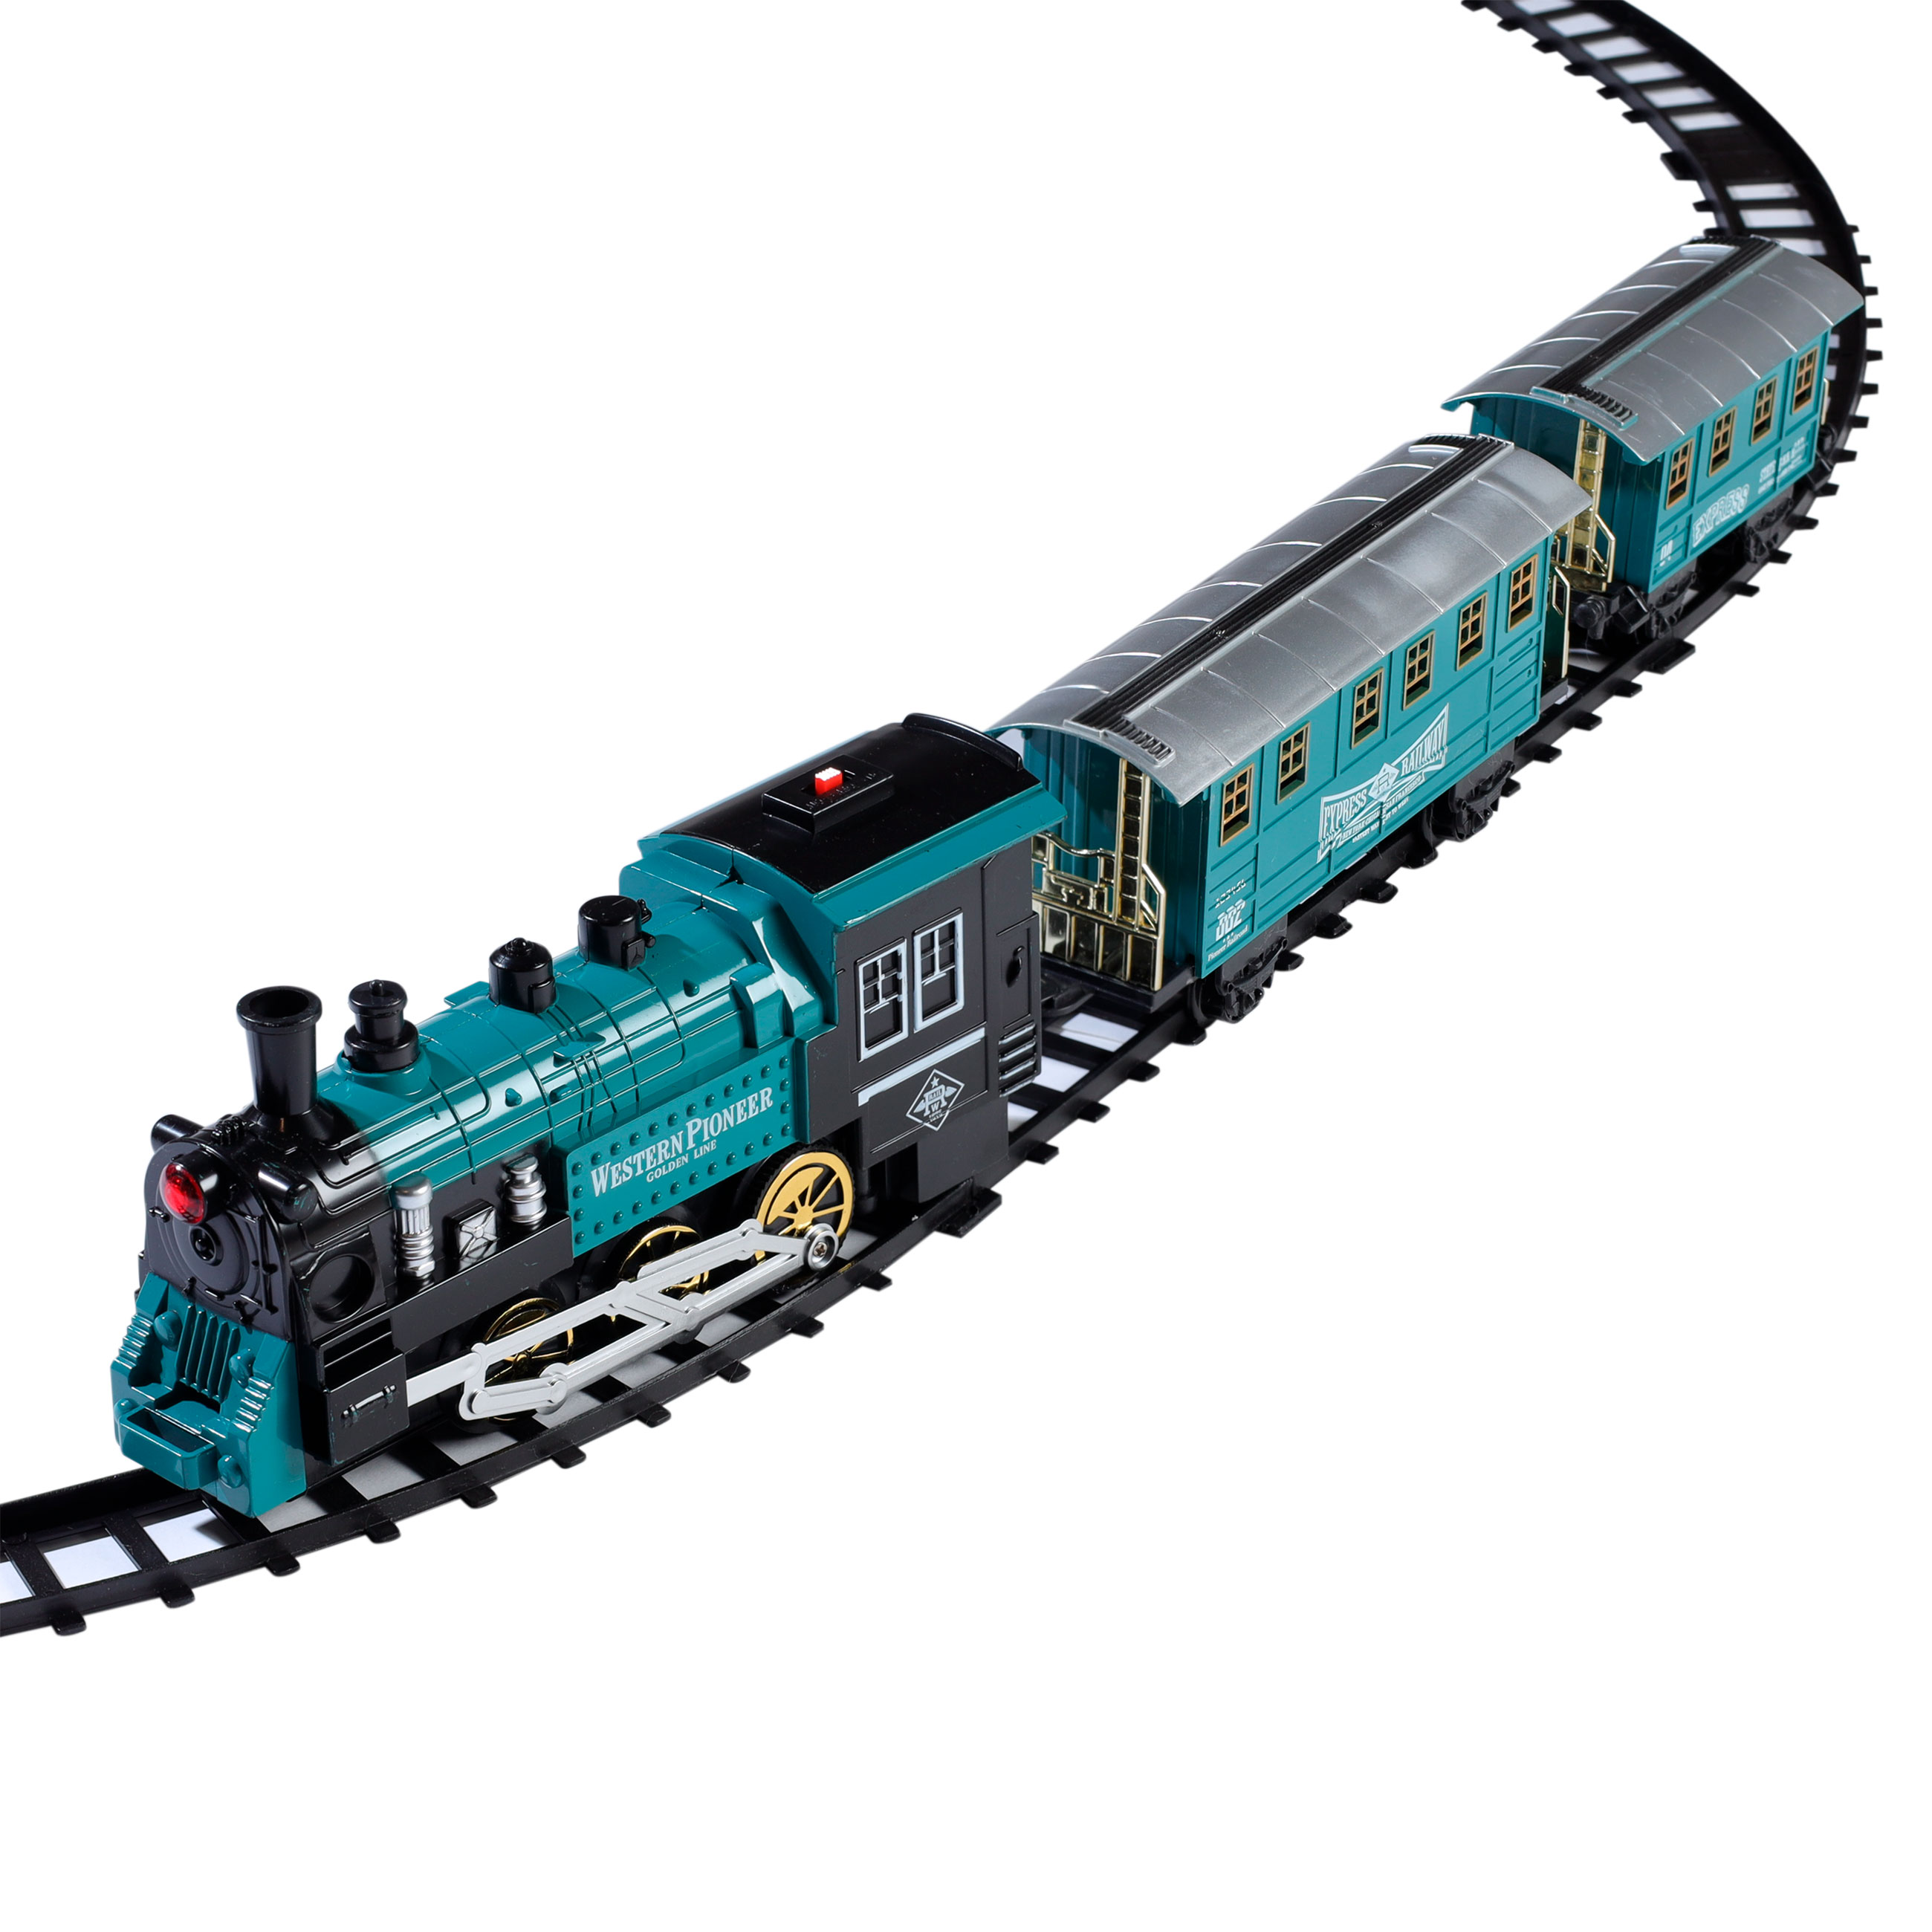 Железная дорога игрушечная, L, музыкальная, с подсветкой/дымом, пластик, Game rail